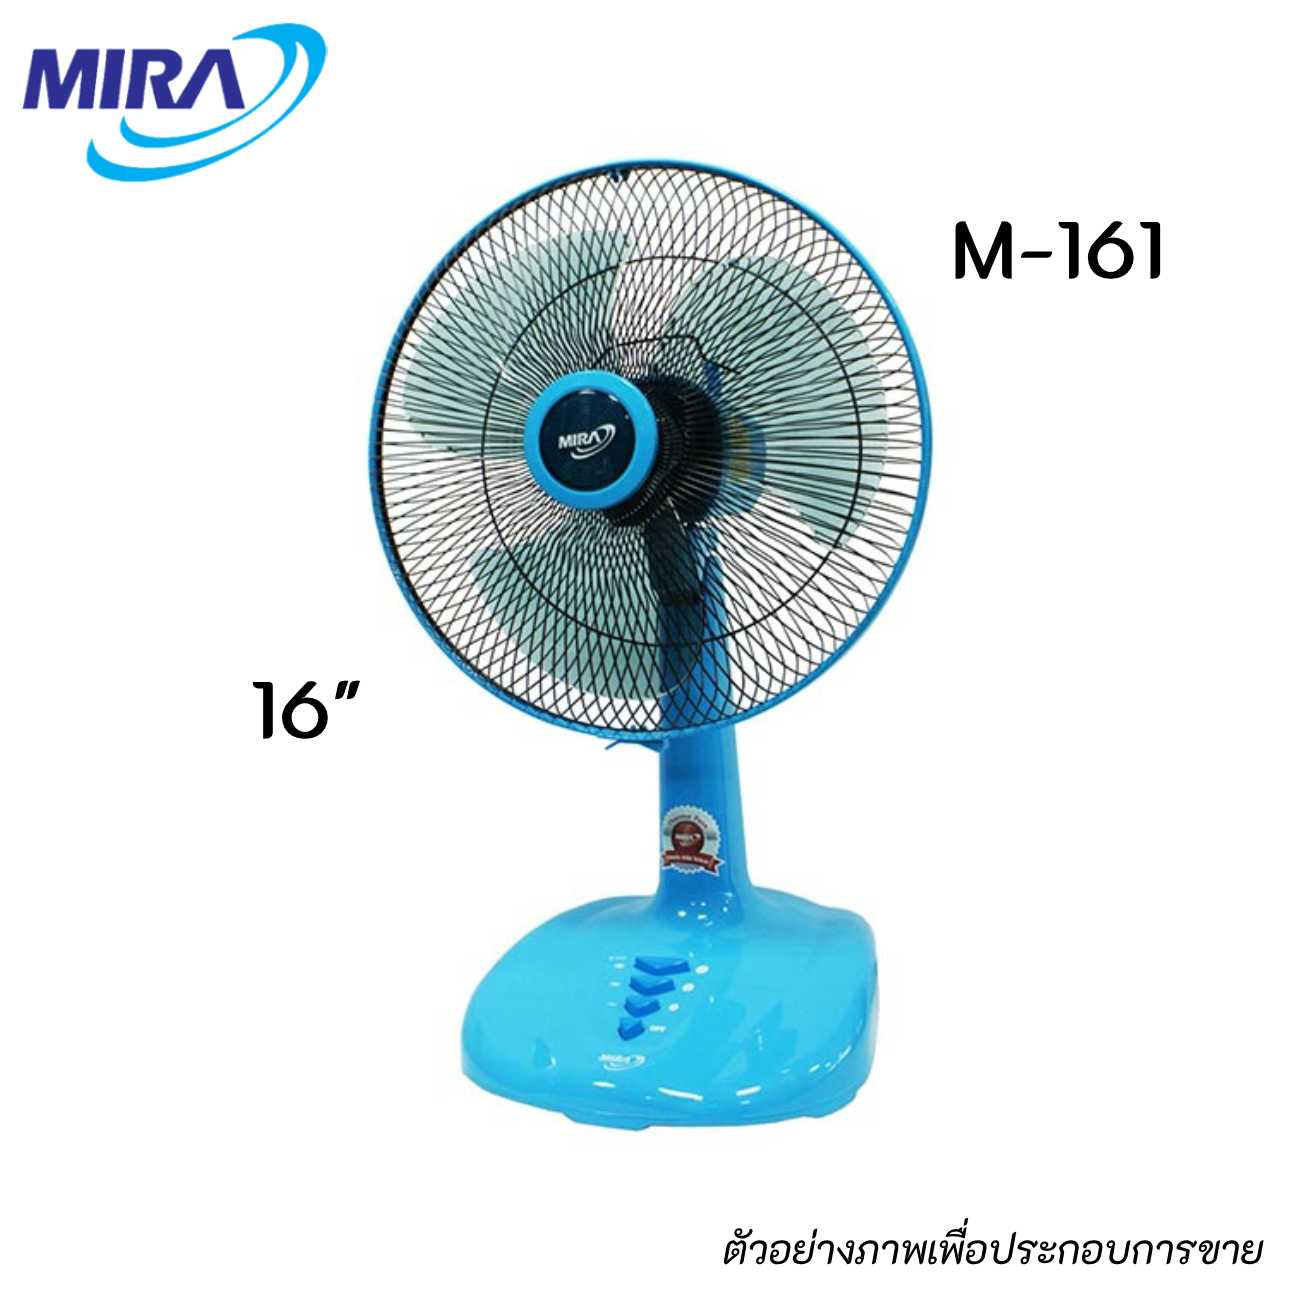 MIRA M-161 พัดลมตั้งโต๊ะ ขนาด 16 นิ้ว สีฟ้า